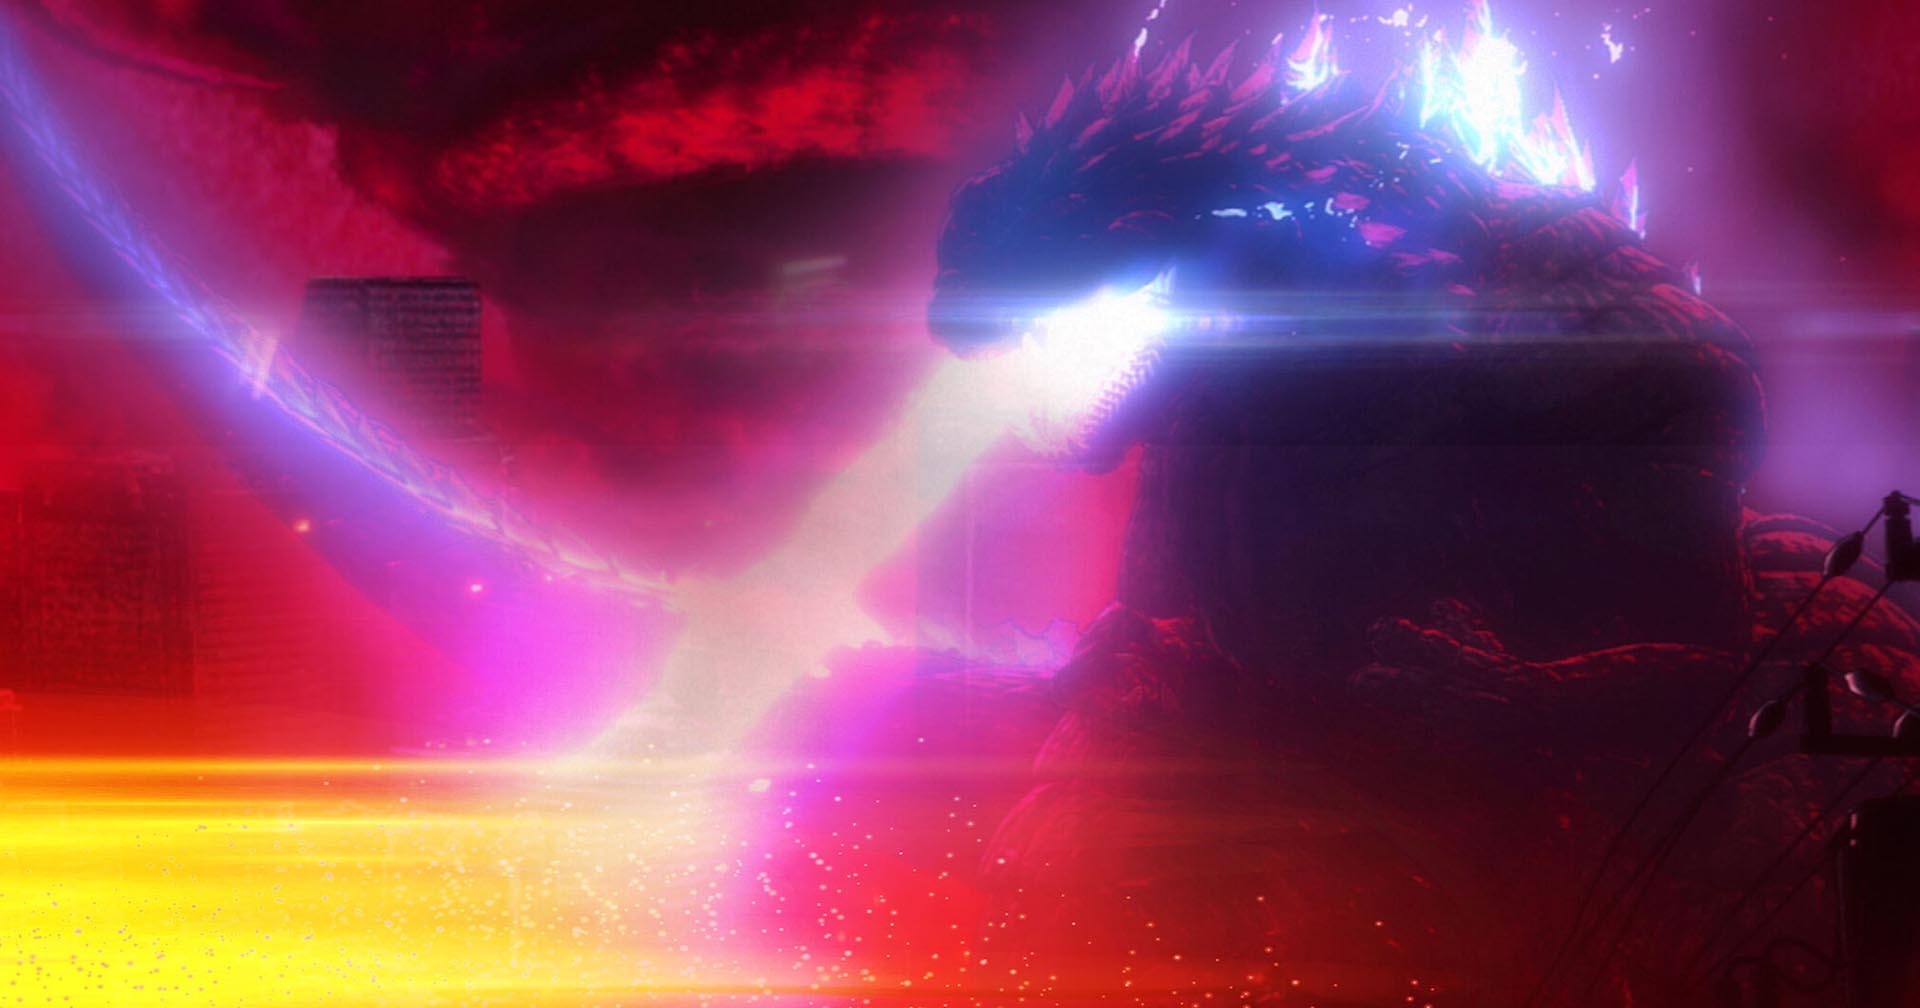 แอนิเมชัน 'Godzilla Singular Point' จะเข้าฉายทาง Netflix วันที่ 24  มิถุนายนนี้ | #beartai